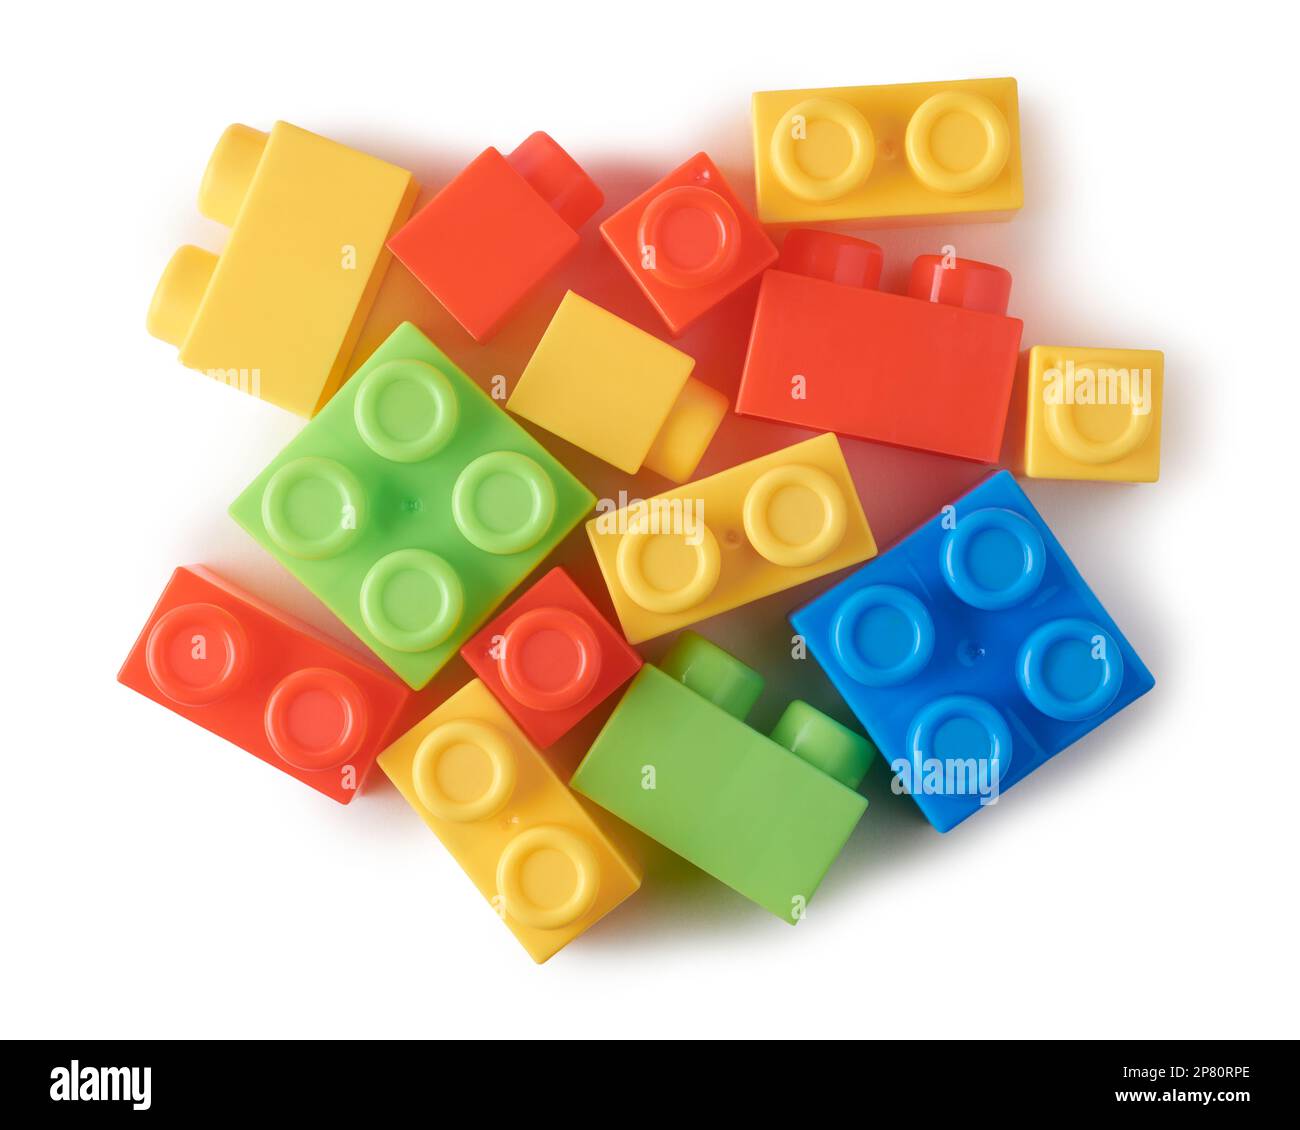 Verschiedene Formen von Spielzeugblöcken, auch Bausteine genannt, miteinander verbundene Plastiksteine, leistungsstarke Lernwerkzeuge, auf weißem Hintergrund verstreut Stockfoto